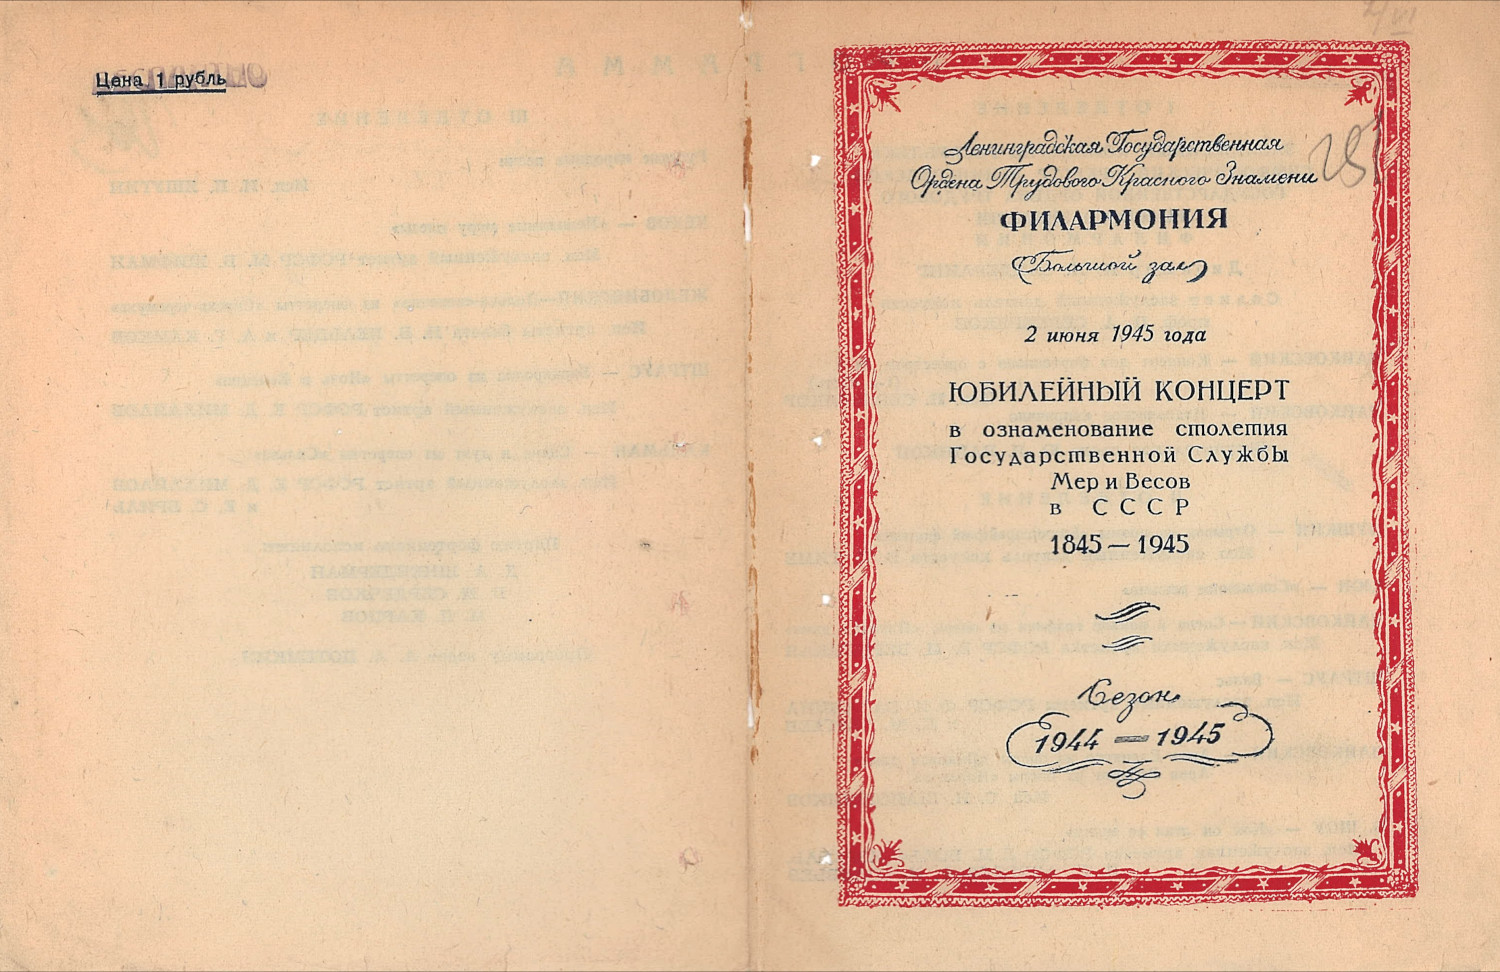 Программа юбилейного концерта в ознаменование столетия Государственной службы мер и весов (2 июня 1945 года)